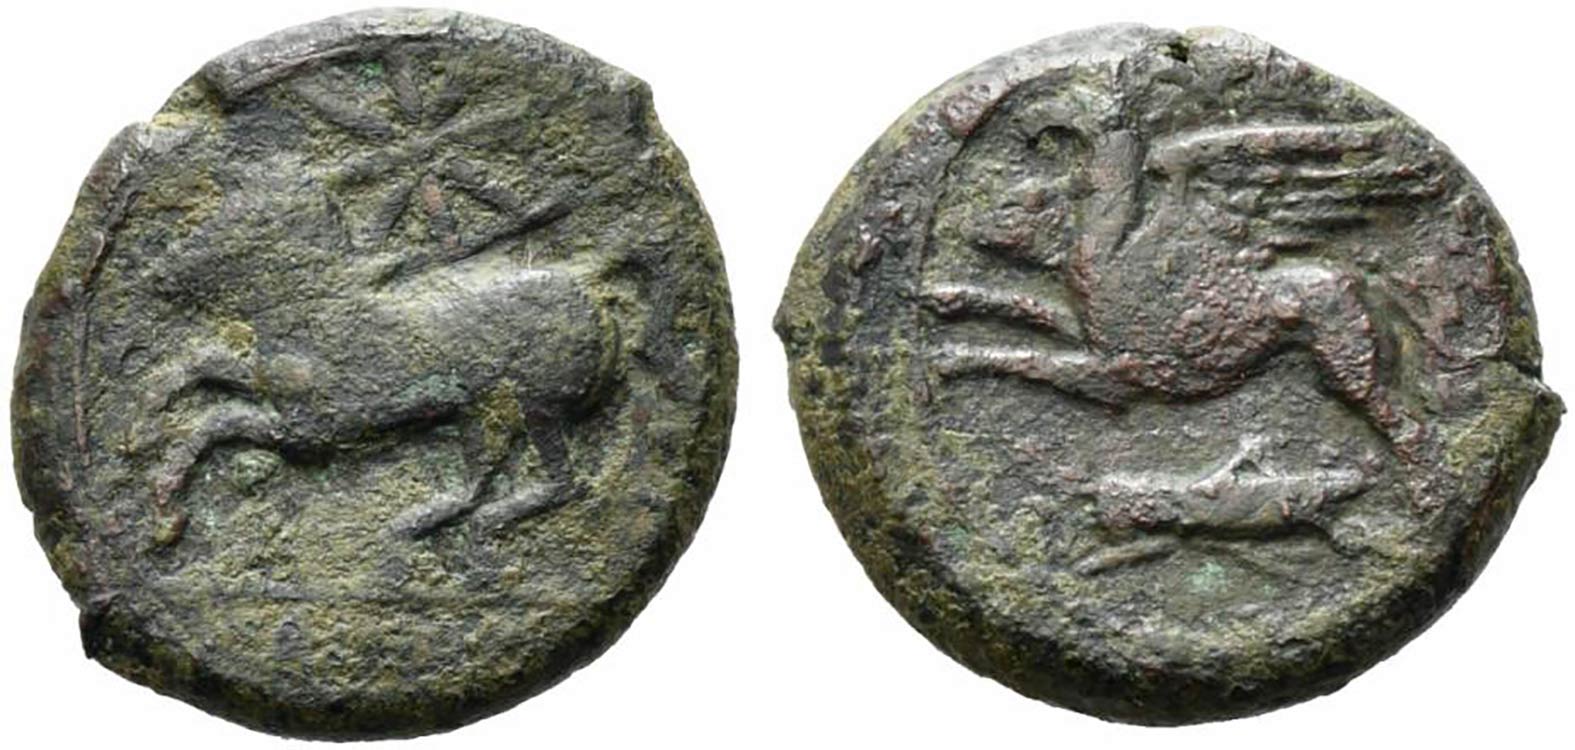 Sicily, Kainon, c. 360-340 BC. ... 